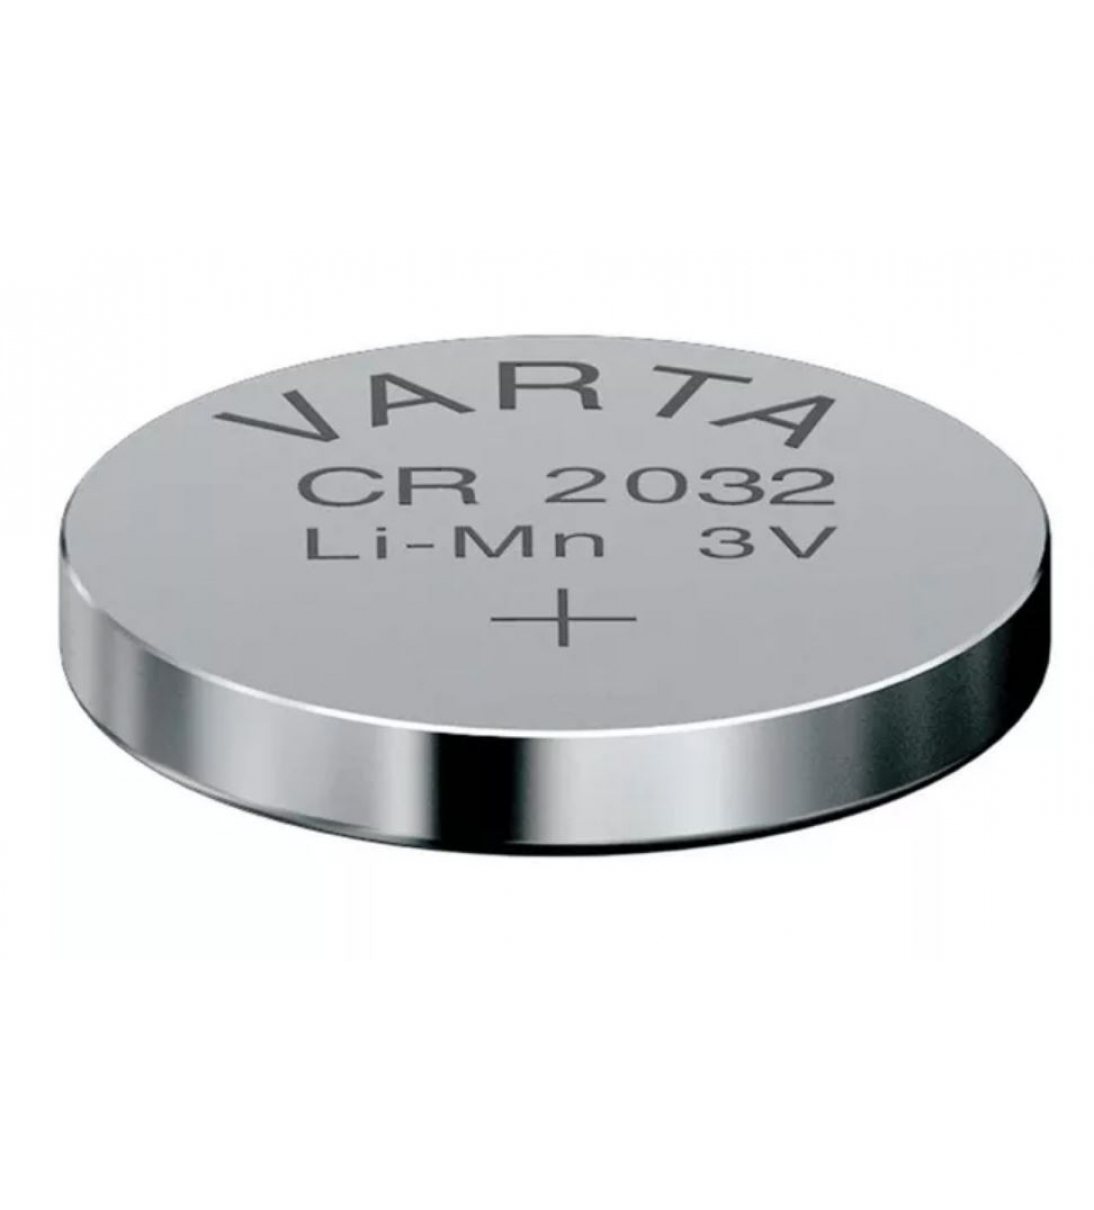 VARTA CR 2032 LiMn Battery 3V